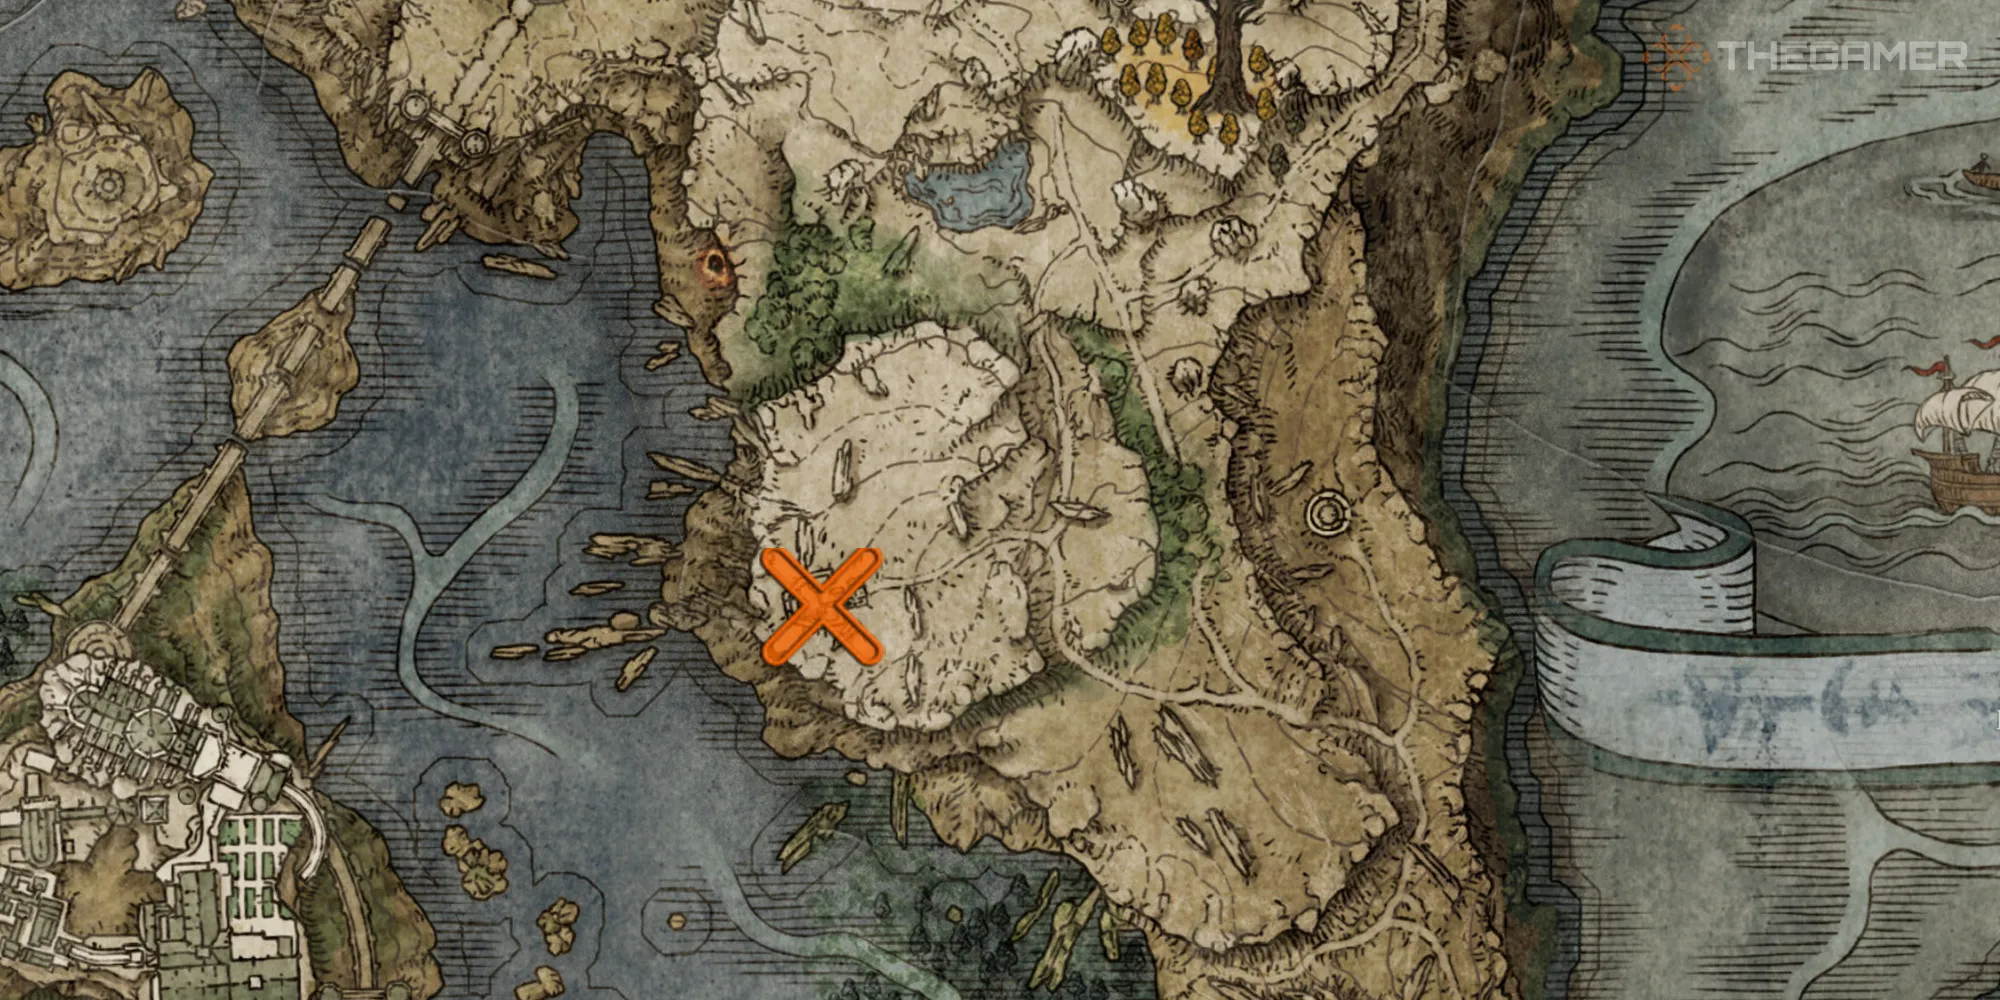 Карта, показывающая местоположение церкви обетов и торговца NPC Мириэль в игре Elden Ring